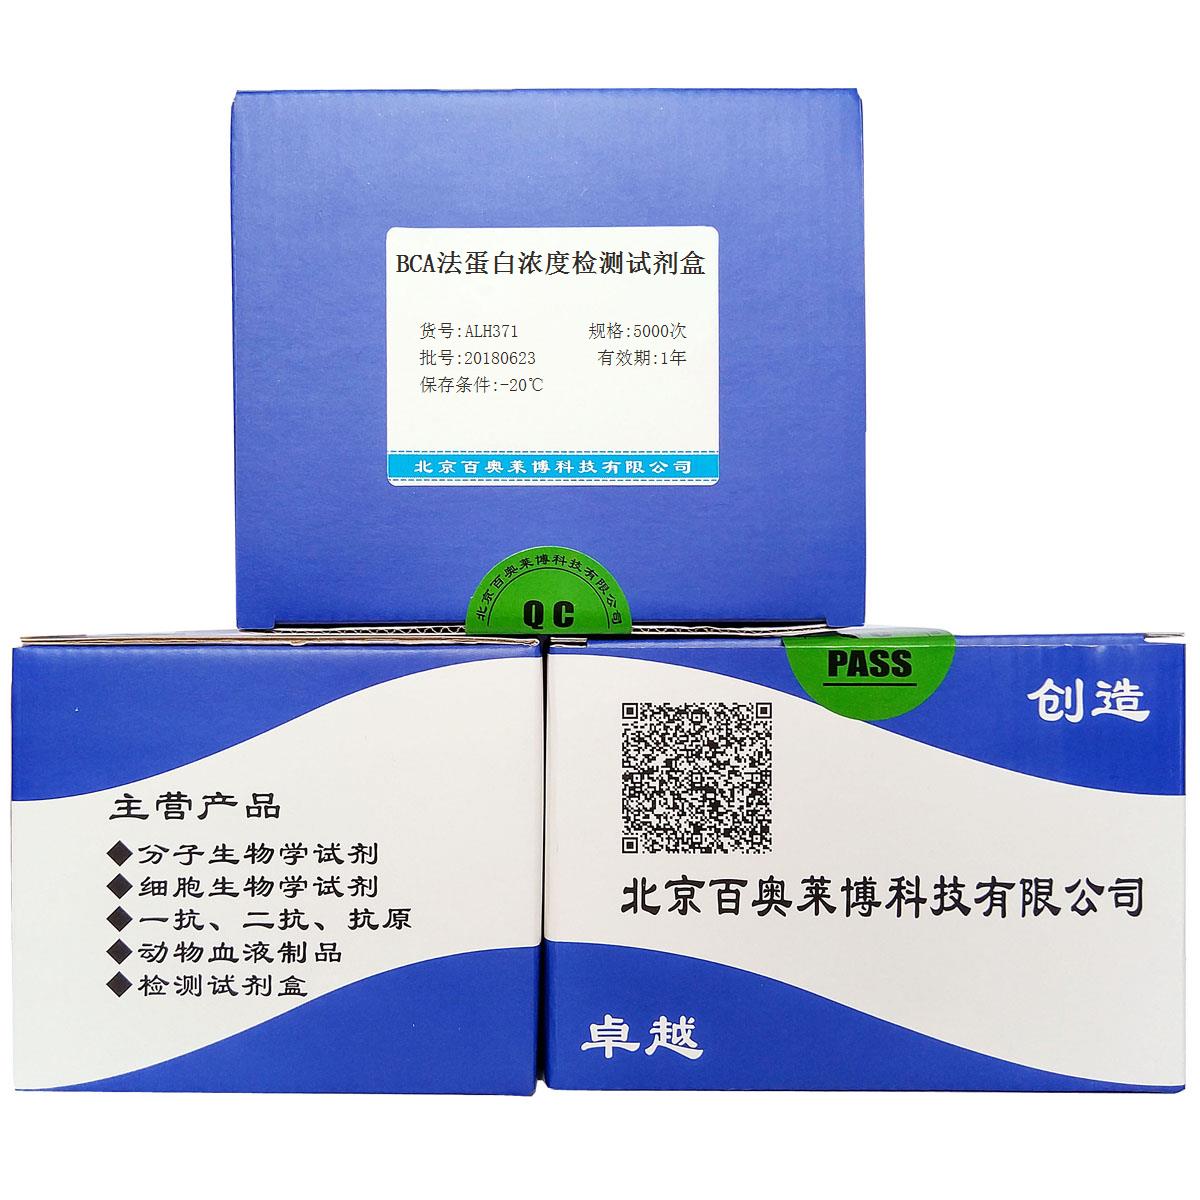 BCA法蛋白浓度检测试剂盒品牌